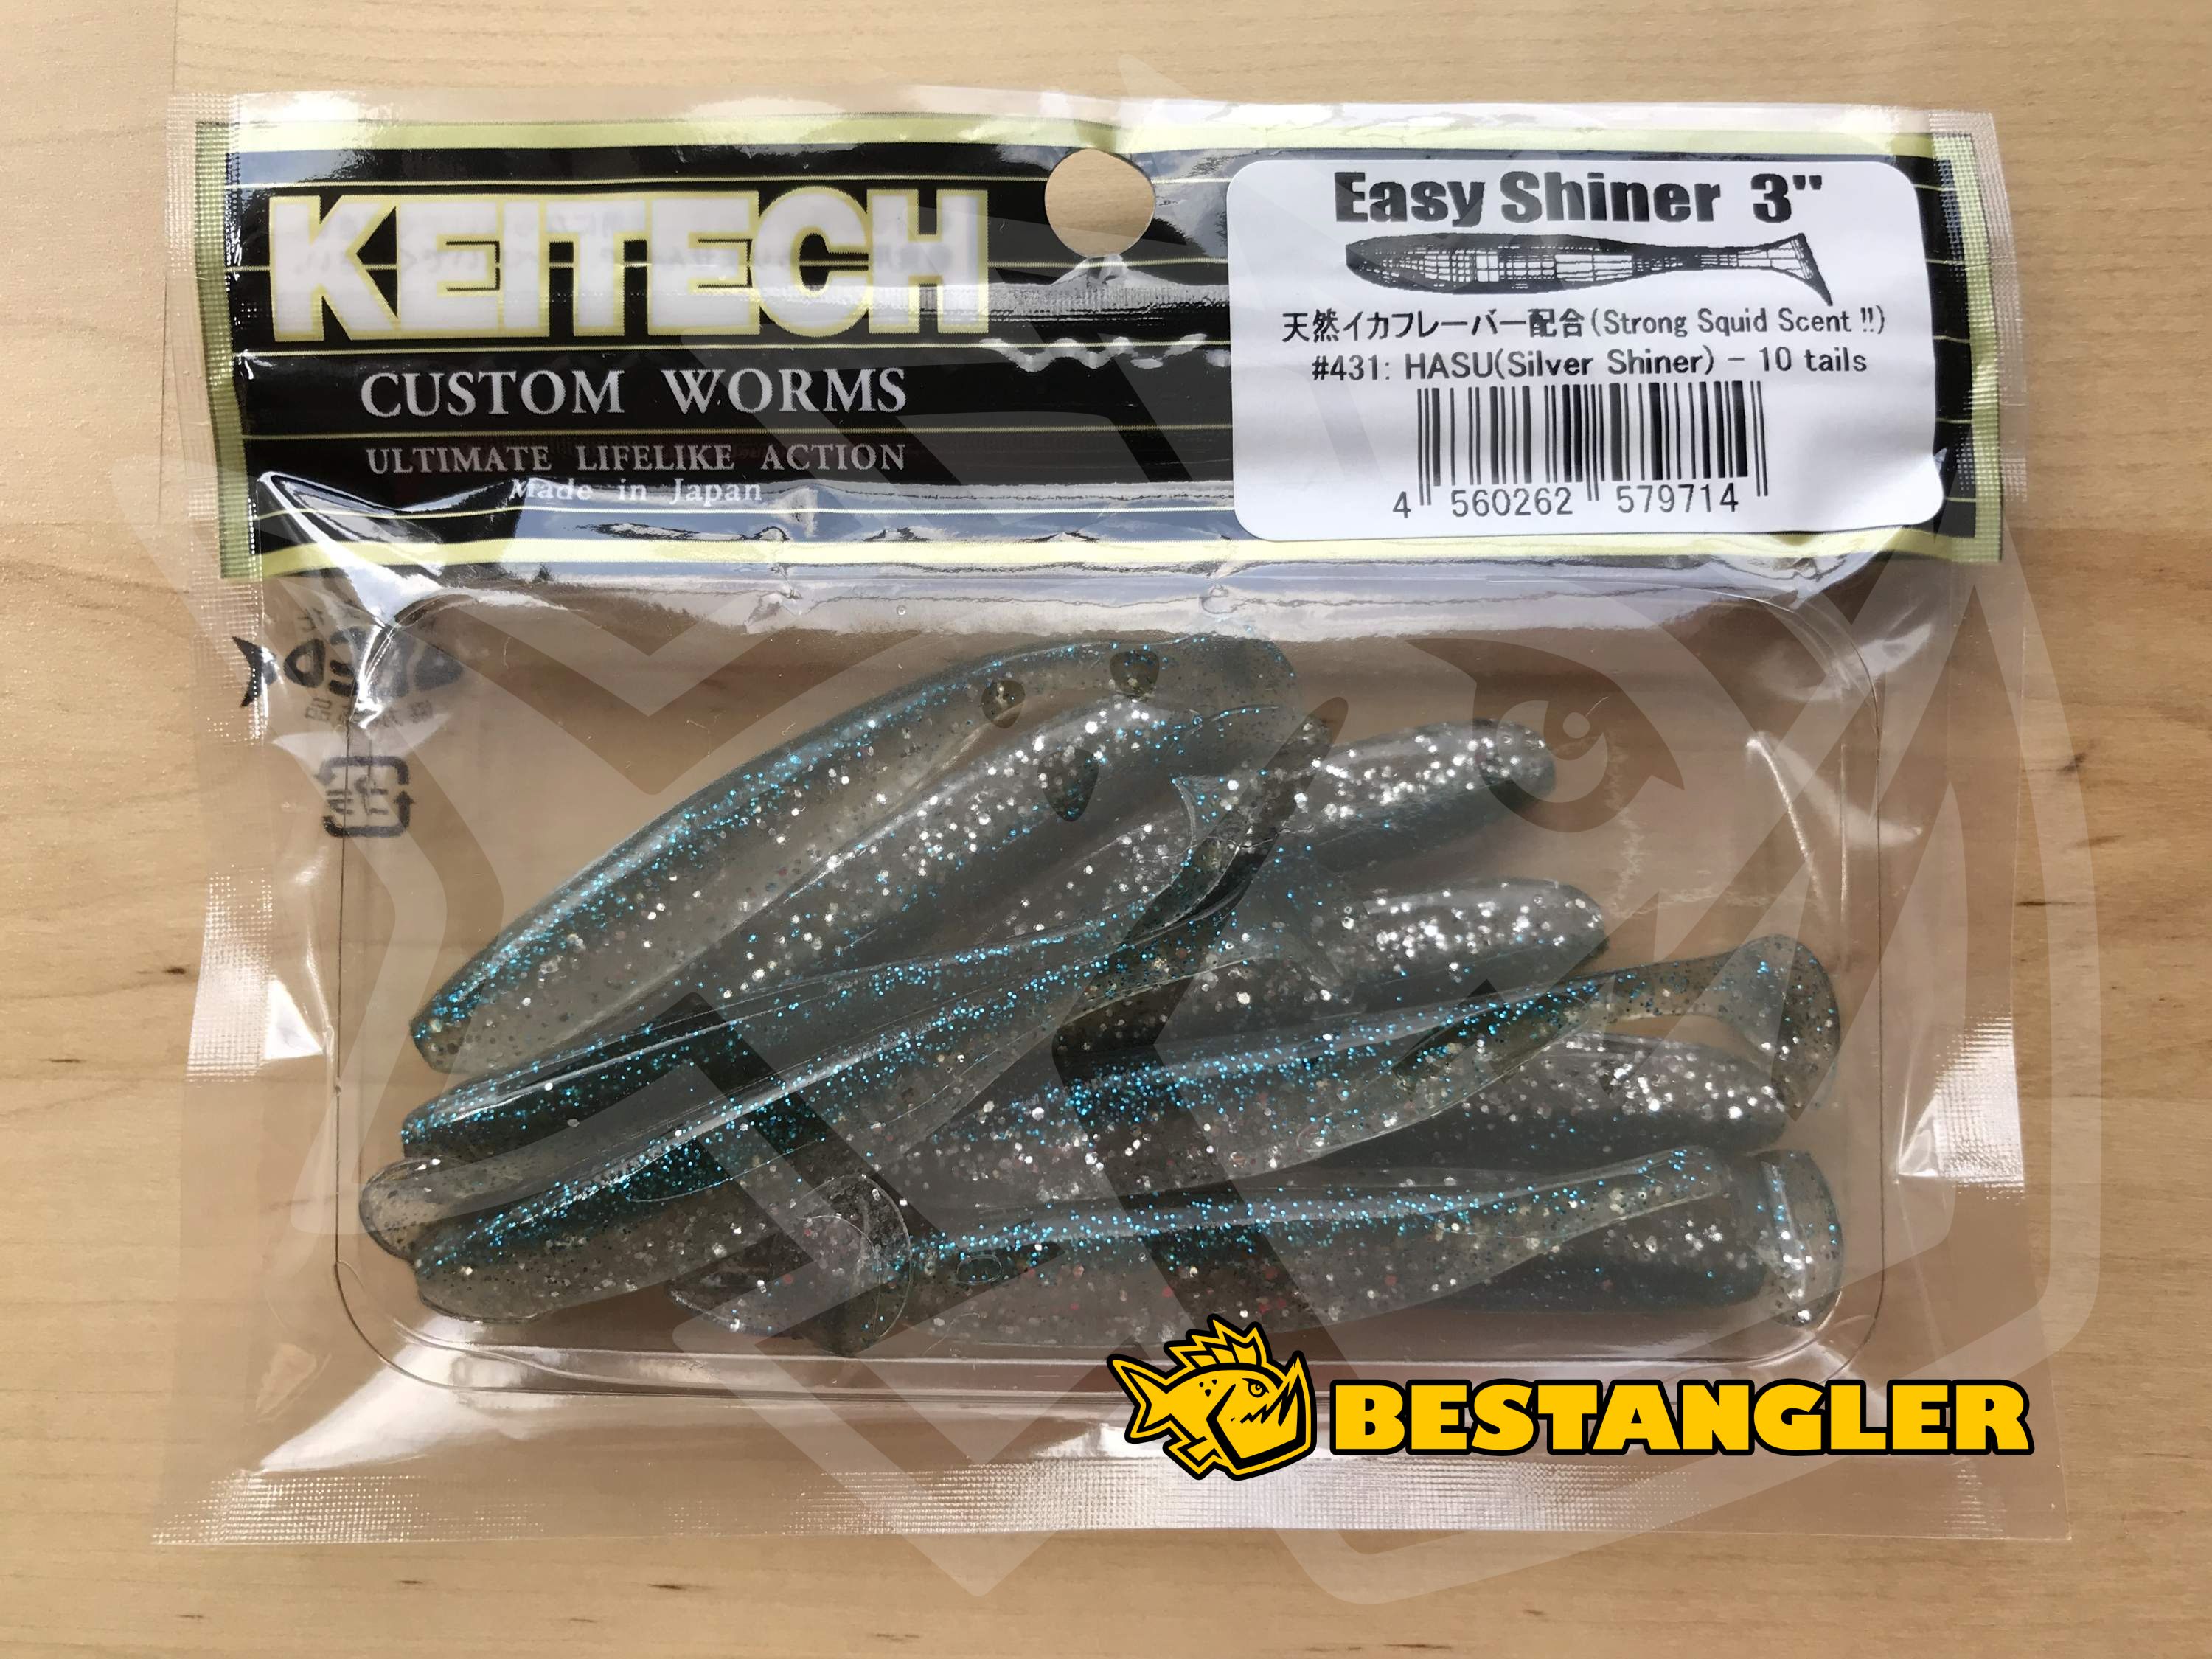 Keitech Easy Shiner 3 Hasu (Silver Shiner)